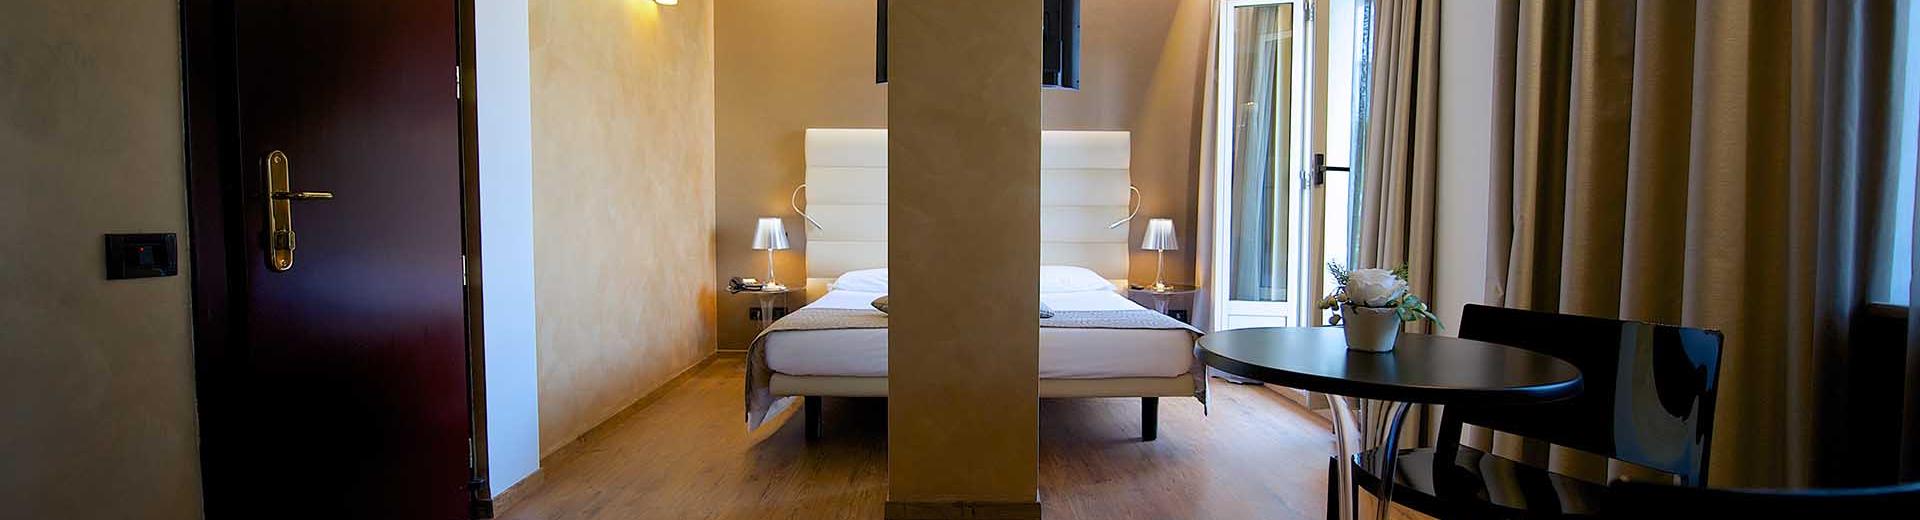 Eleganza nelle camere superior del BW Hotel Luxor 3 stelle a Torino